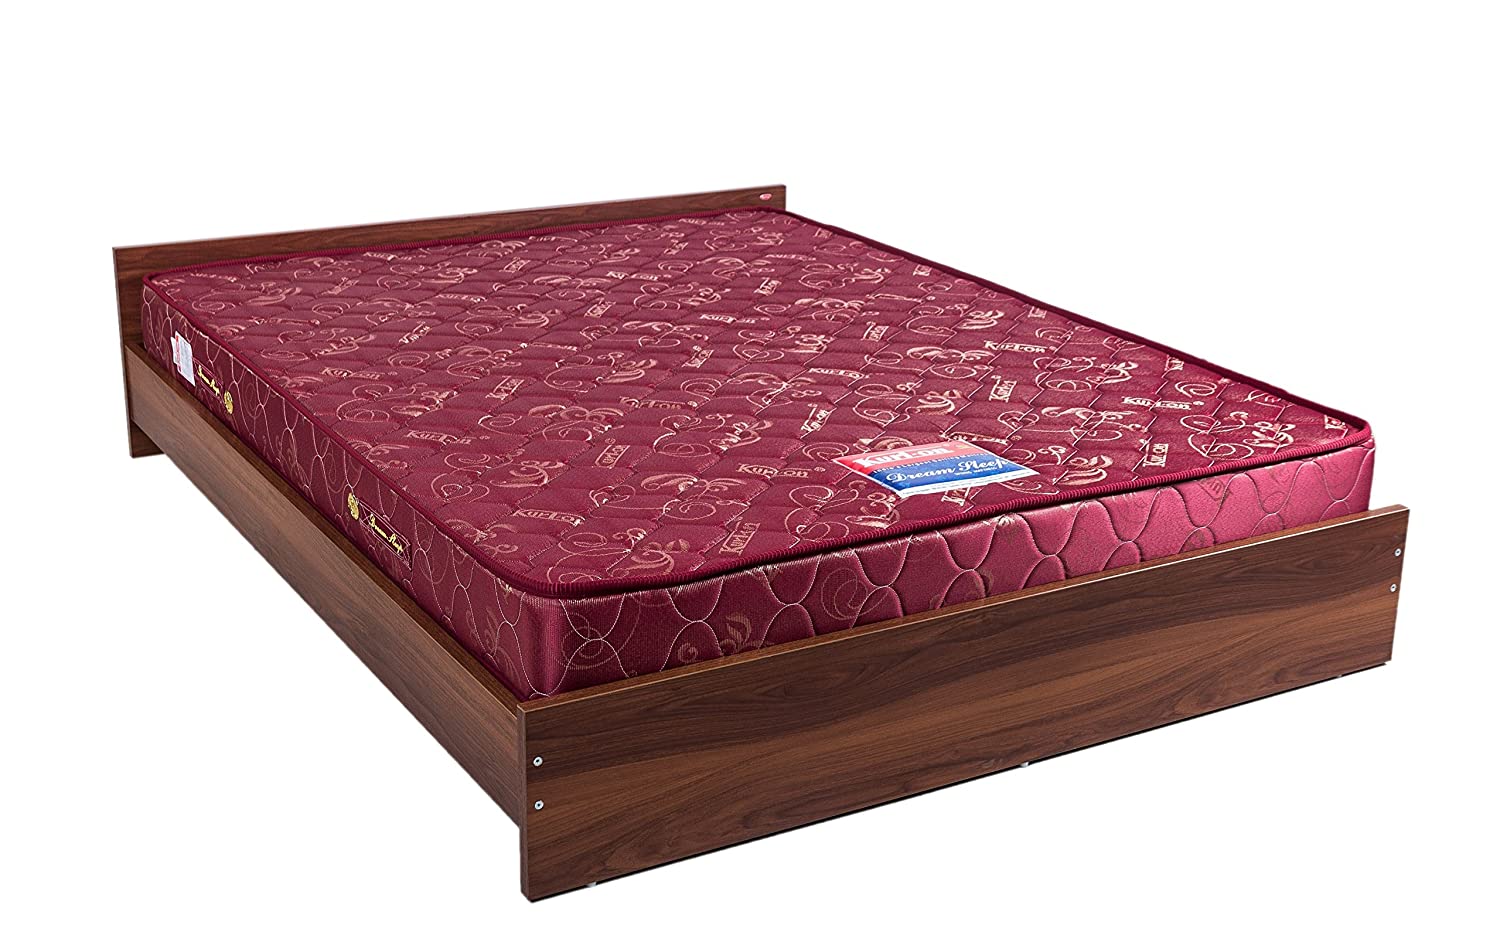 2 piece inner spring v-seam futon mattress